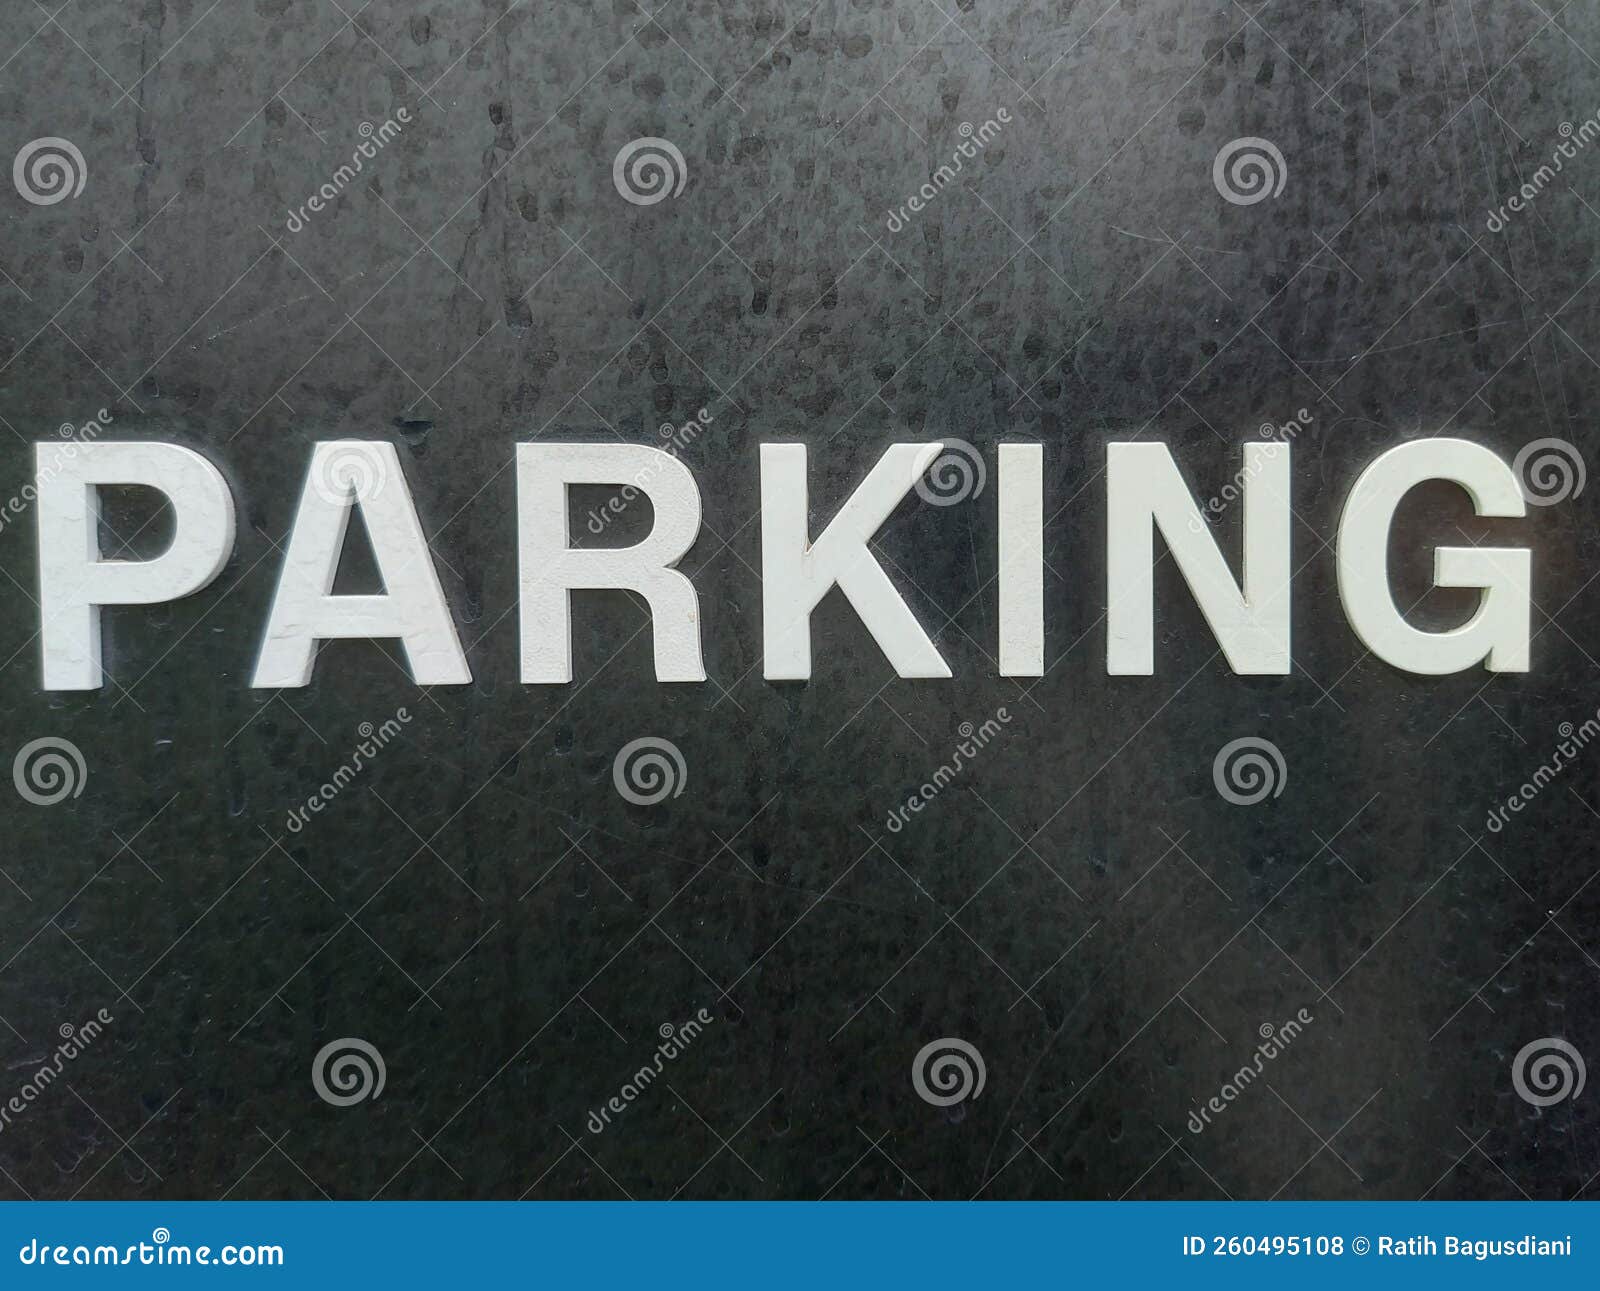 parking text